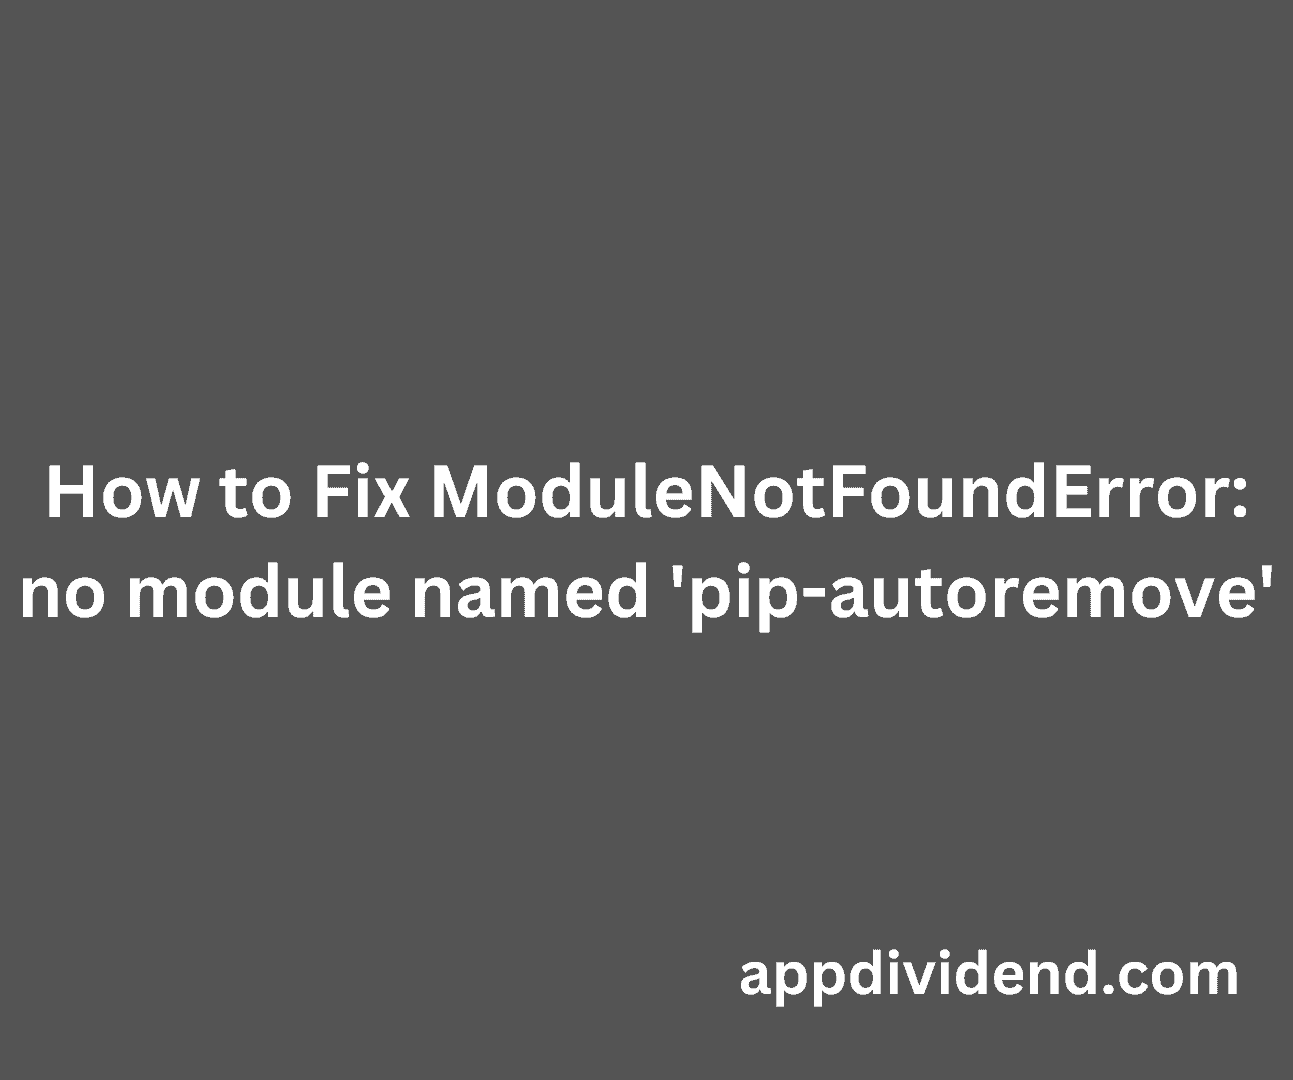 How to Fix ModuleNotFoundError - no module named pip-autoremove